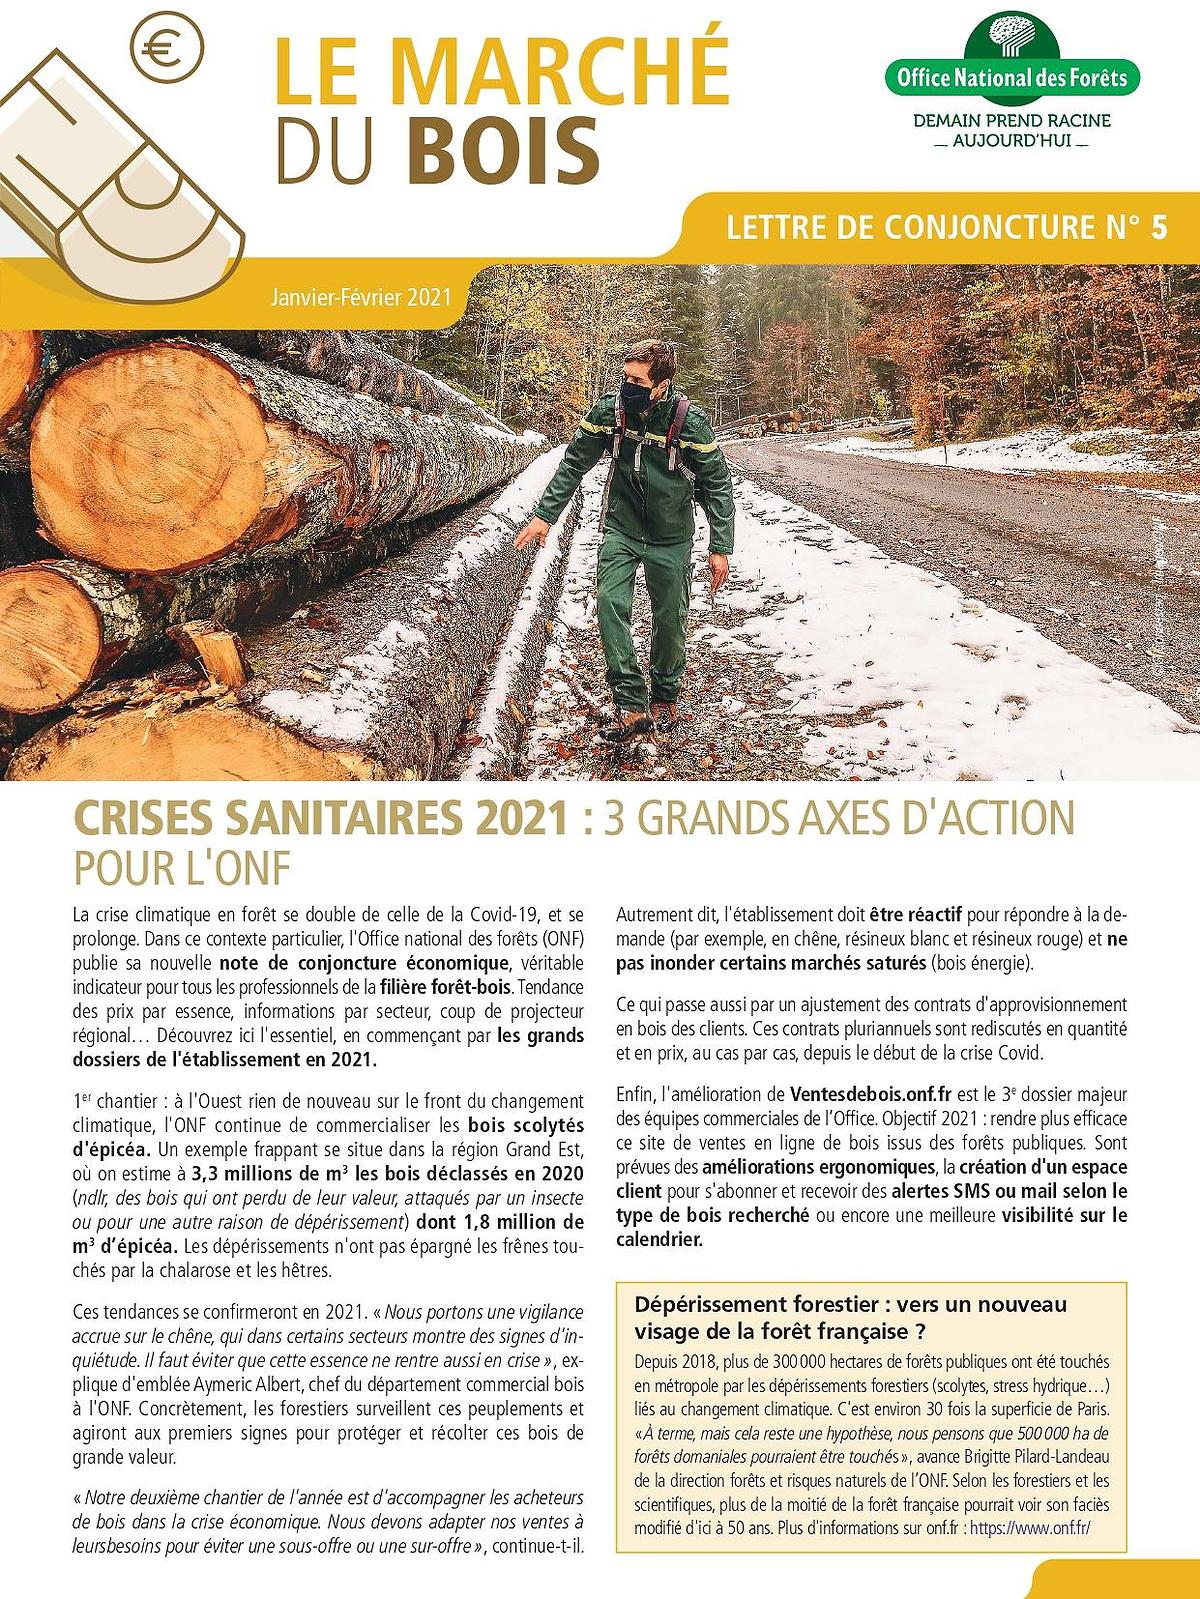 La construction bois 2020 : un marché en devenir - France Bois Forêt